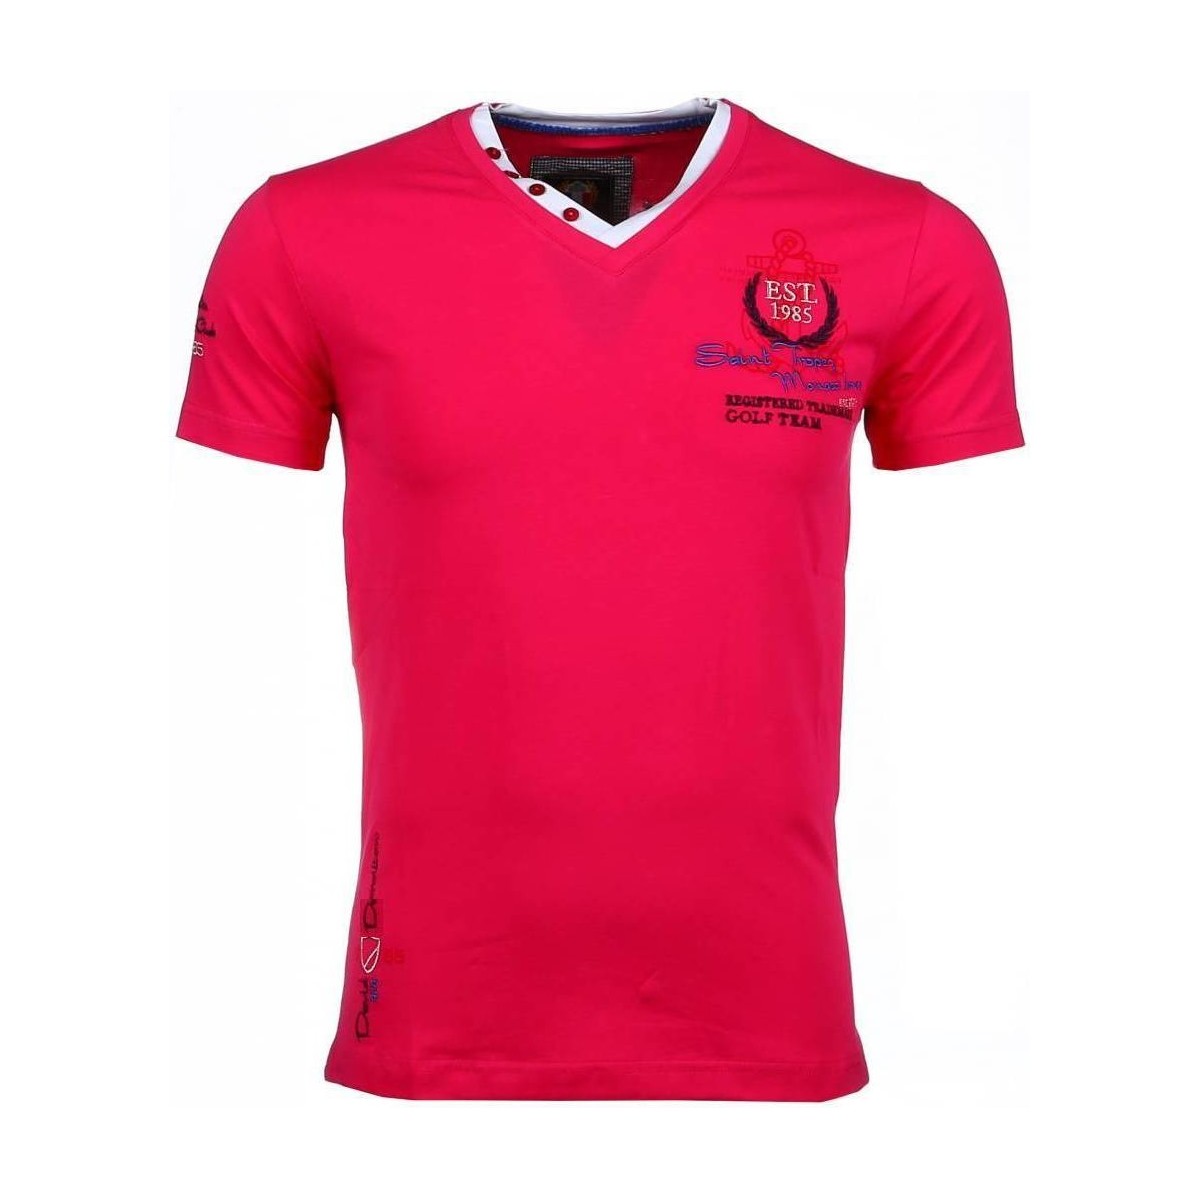 Υφασμάτινα Άνδρας T-shirt με κοντά μανίκια David Copper 5112905 Ροζ